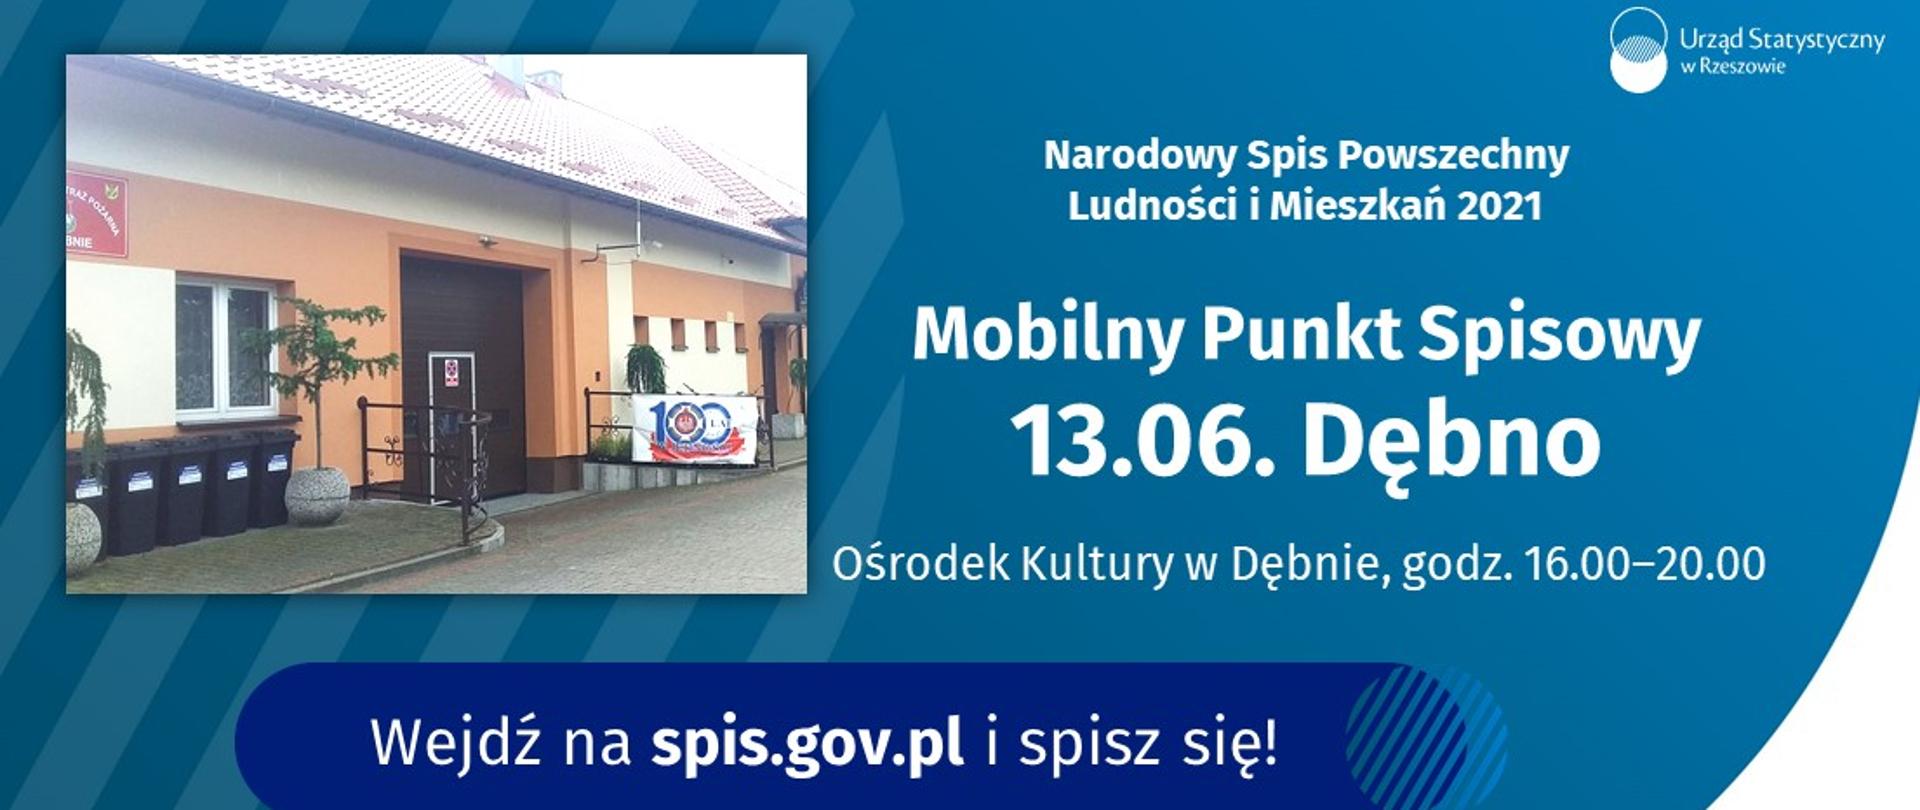 Plakat na którym znajduję się zdjęcie budynku Ośrodka Kultury w Dębnie oraz informację o organizacji Mobilnego Punktu Spisowego w dniu 13 czerwca 2021 w Ośrodku Kultury w godzinach od 16:00 do 20:00.